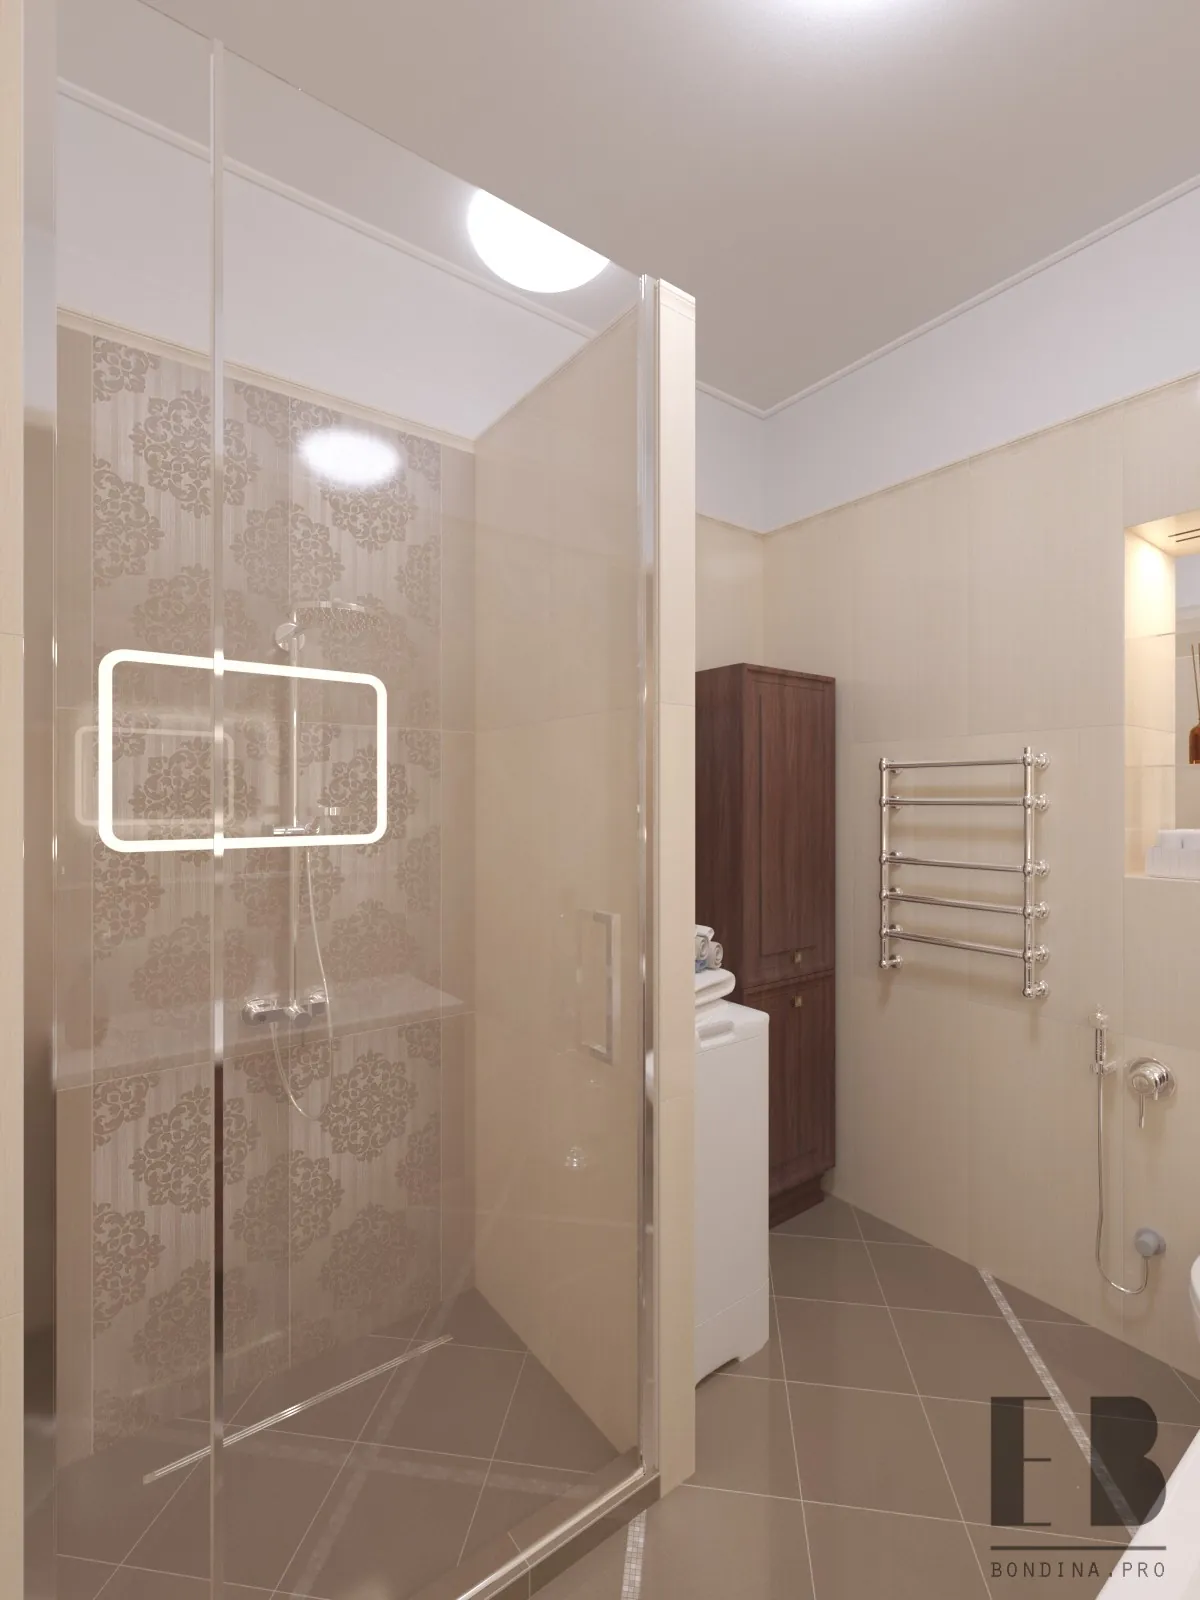 Modern bathroom design in beige color